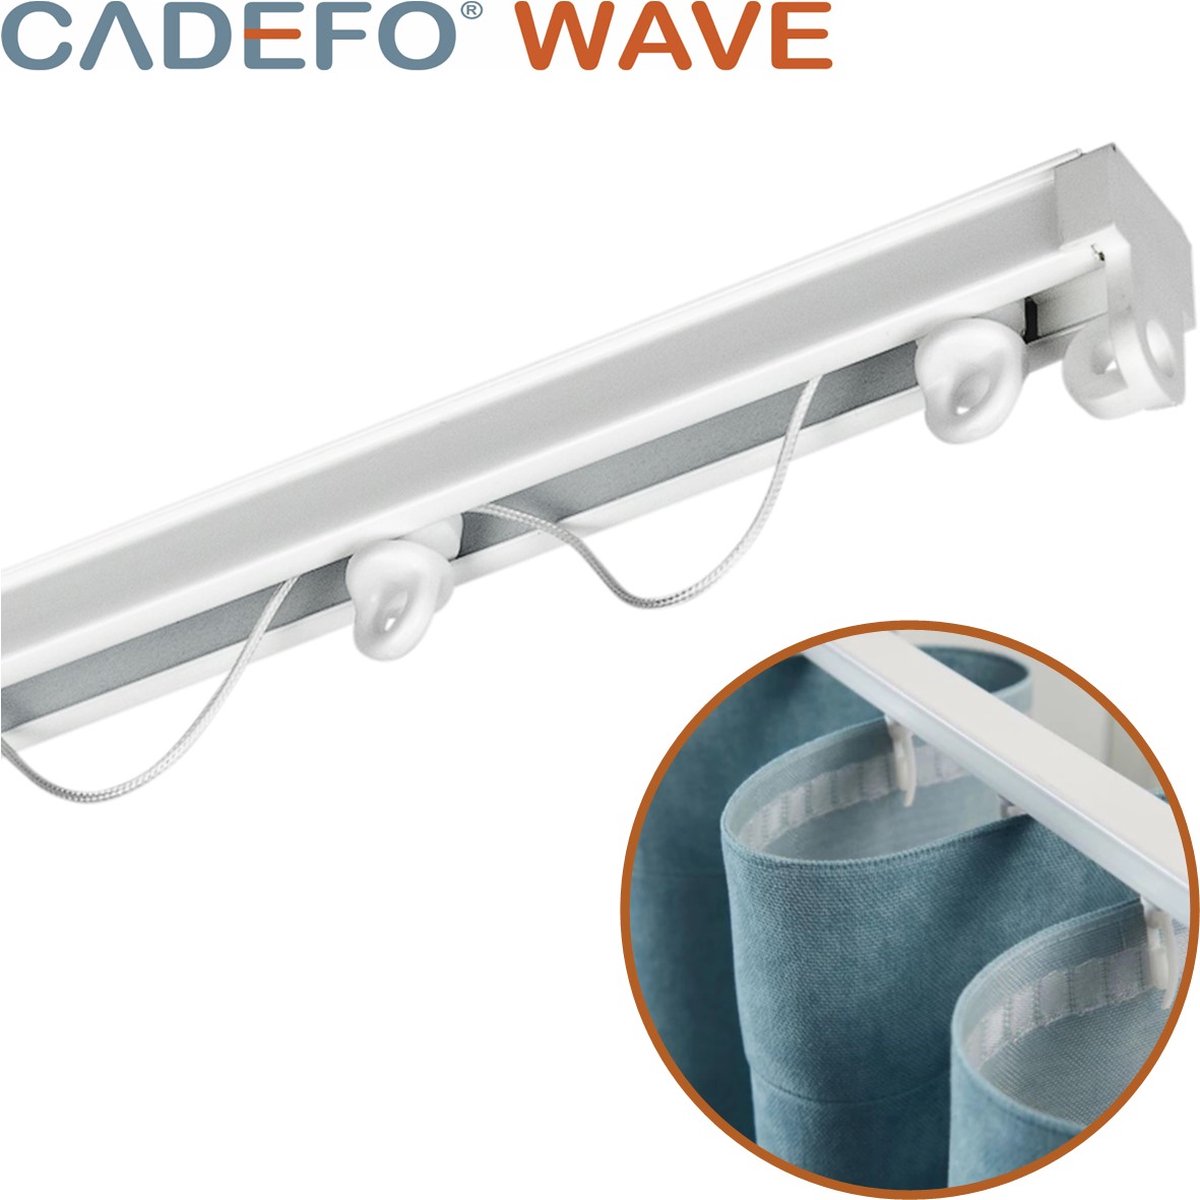 CADEFO WAVE (151 - 200 cm) Gordijnrails - Compleet op maat! - UIT 1 STUK - Leverbaar tot 6 meter - Plafondbevestiging - Lengte 156 cm